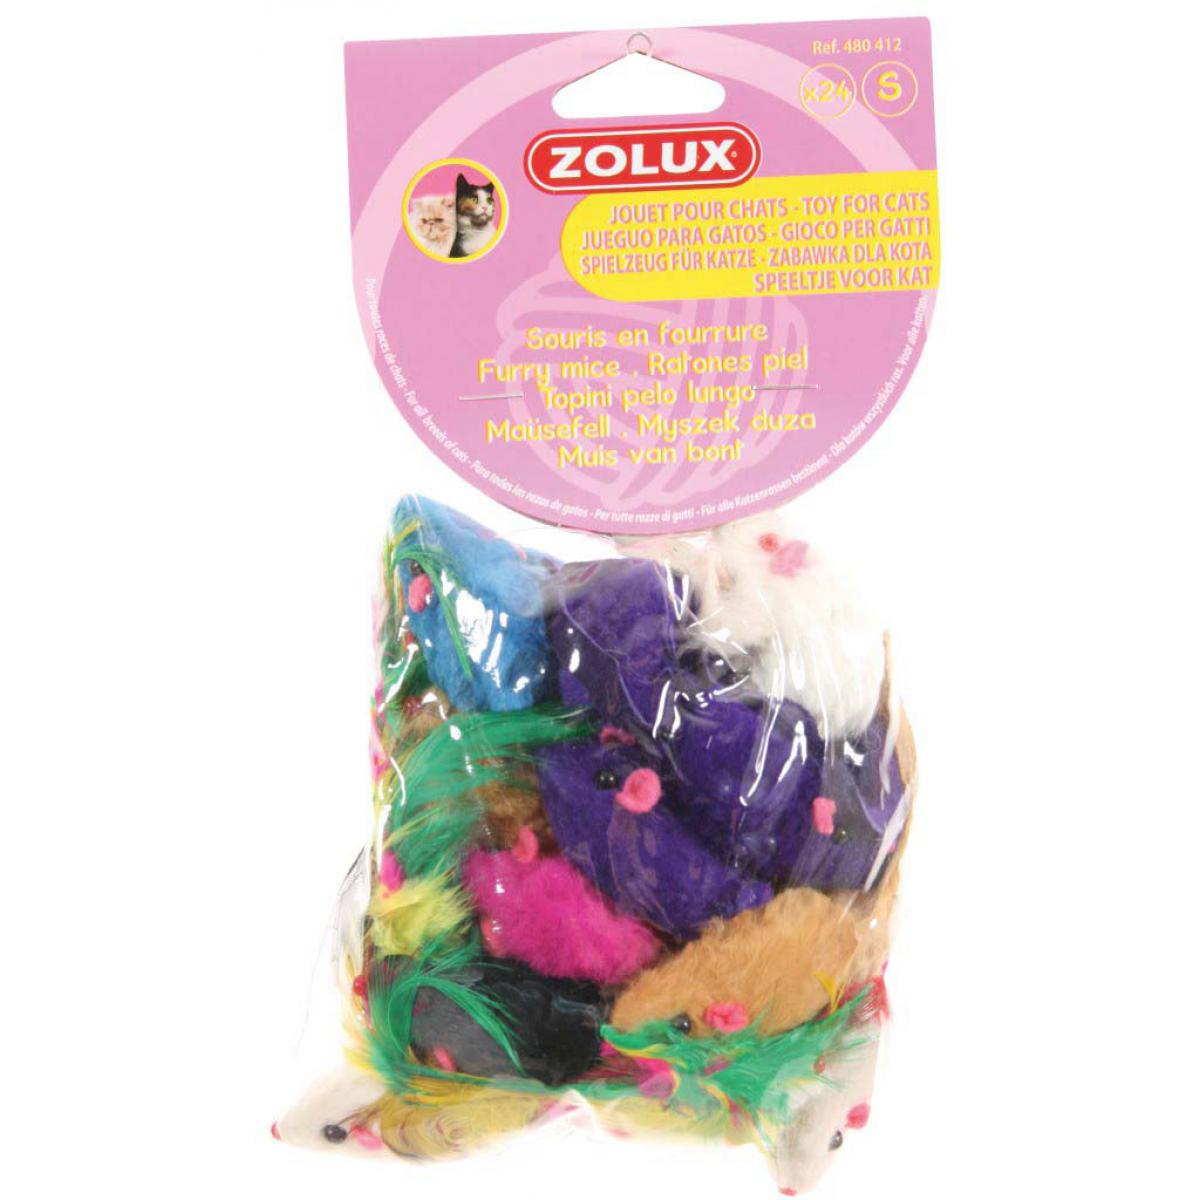 Zolux - 24 jouets pour chat Souris en fourrure - Arbre à chat